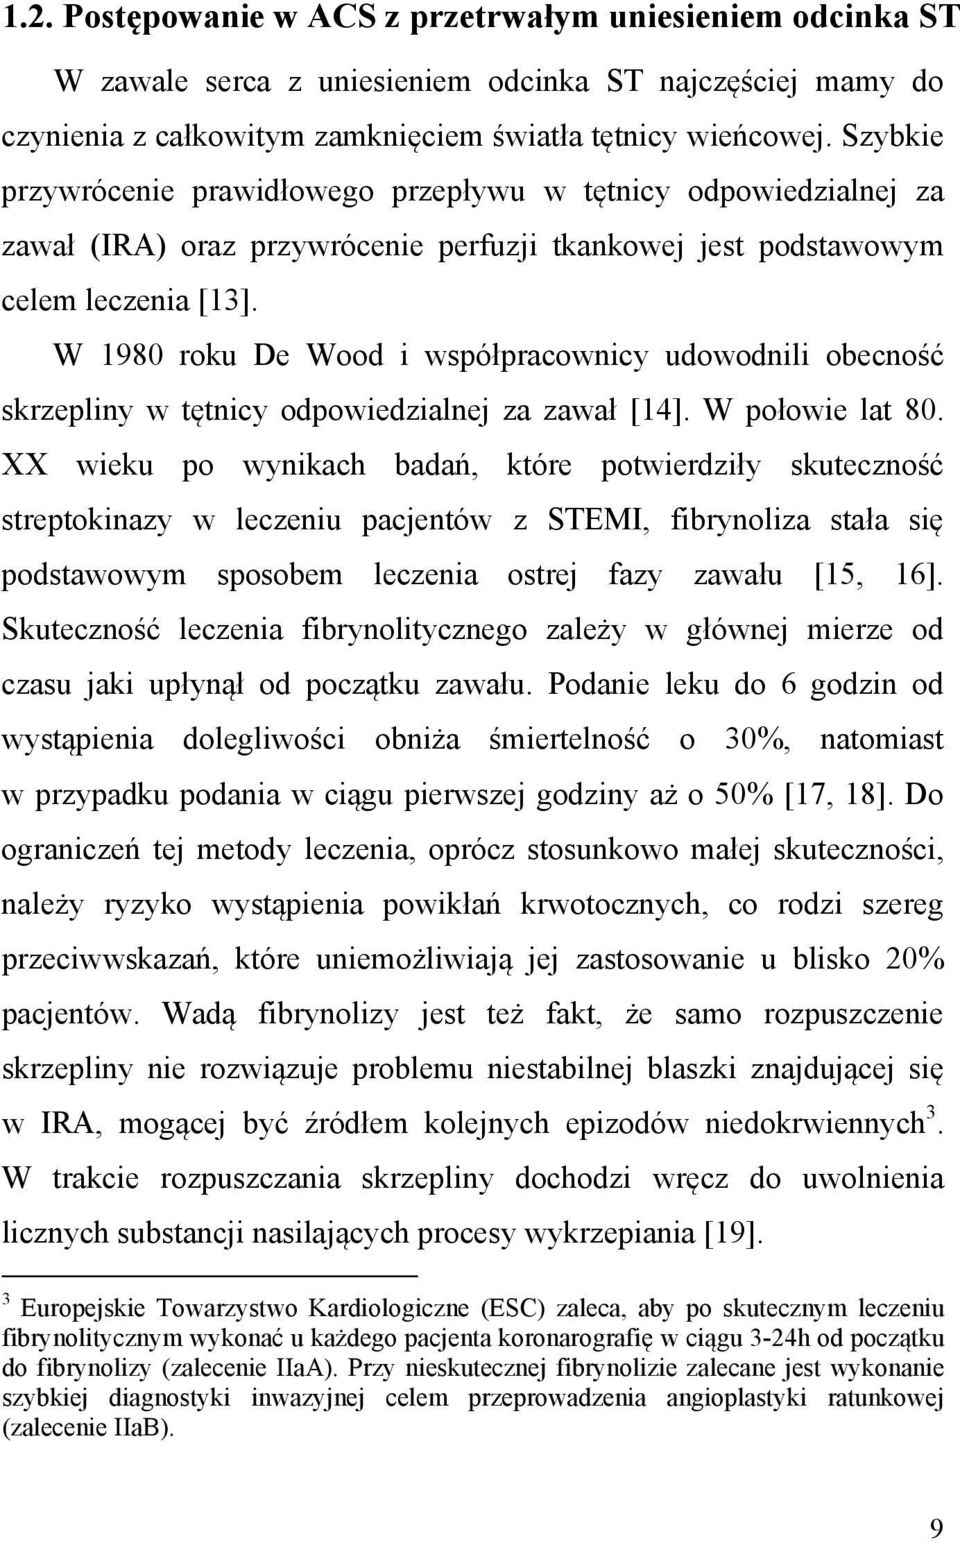 W 1980 roku De Wood i współpracownicy udowodnili obecność skrzepliny w tętnicy odpowiedzialnej za zawał [14]. W połowie lat 80.